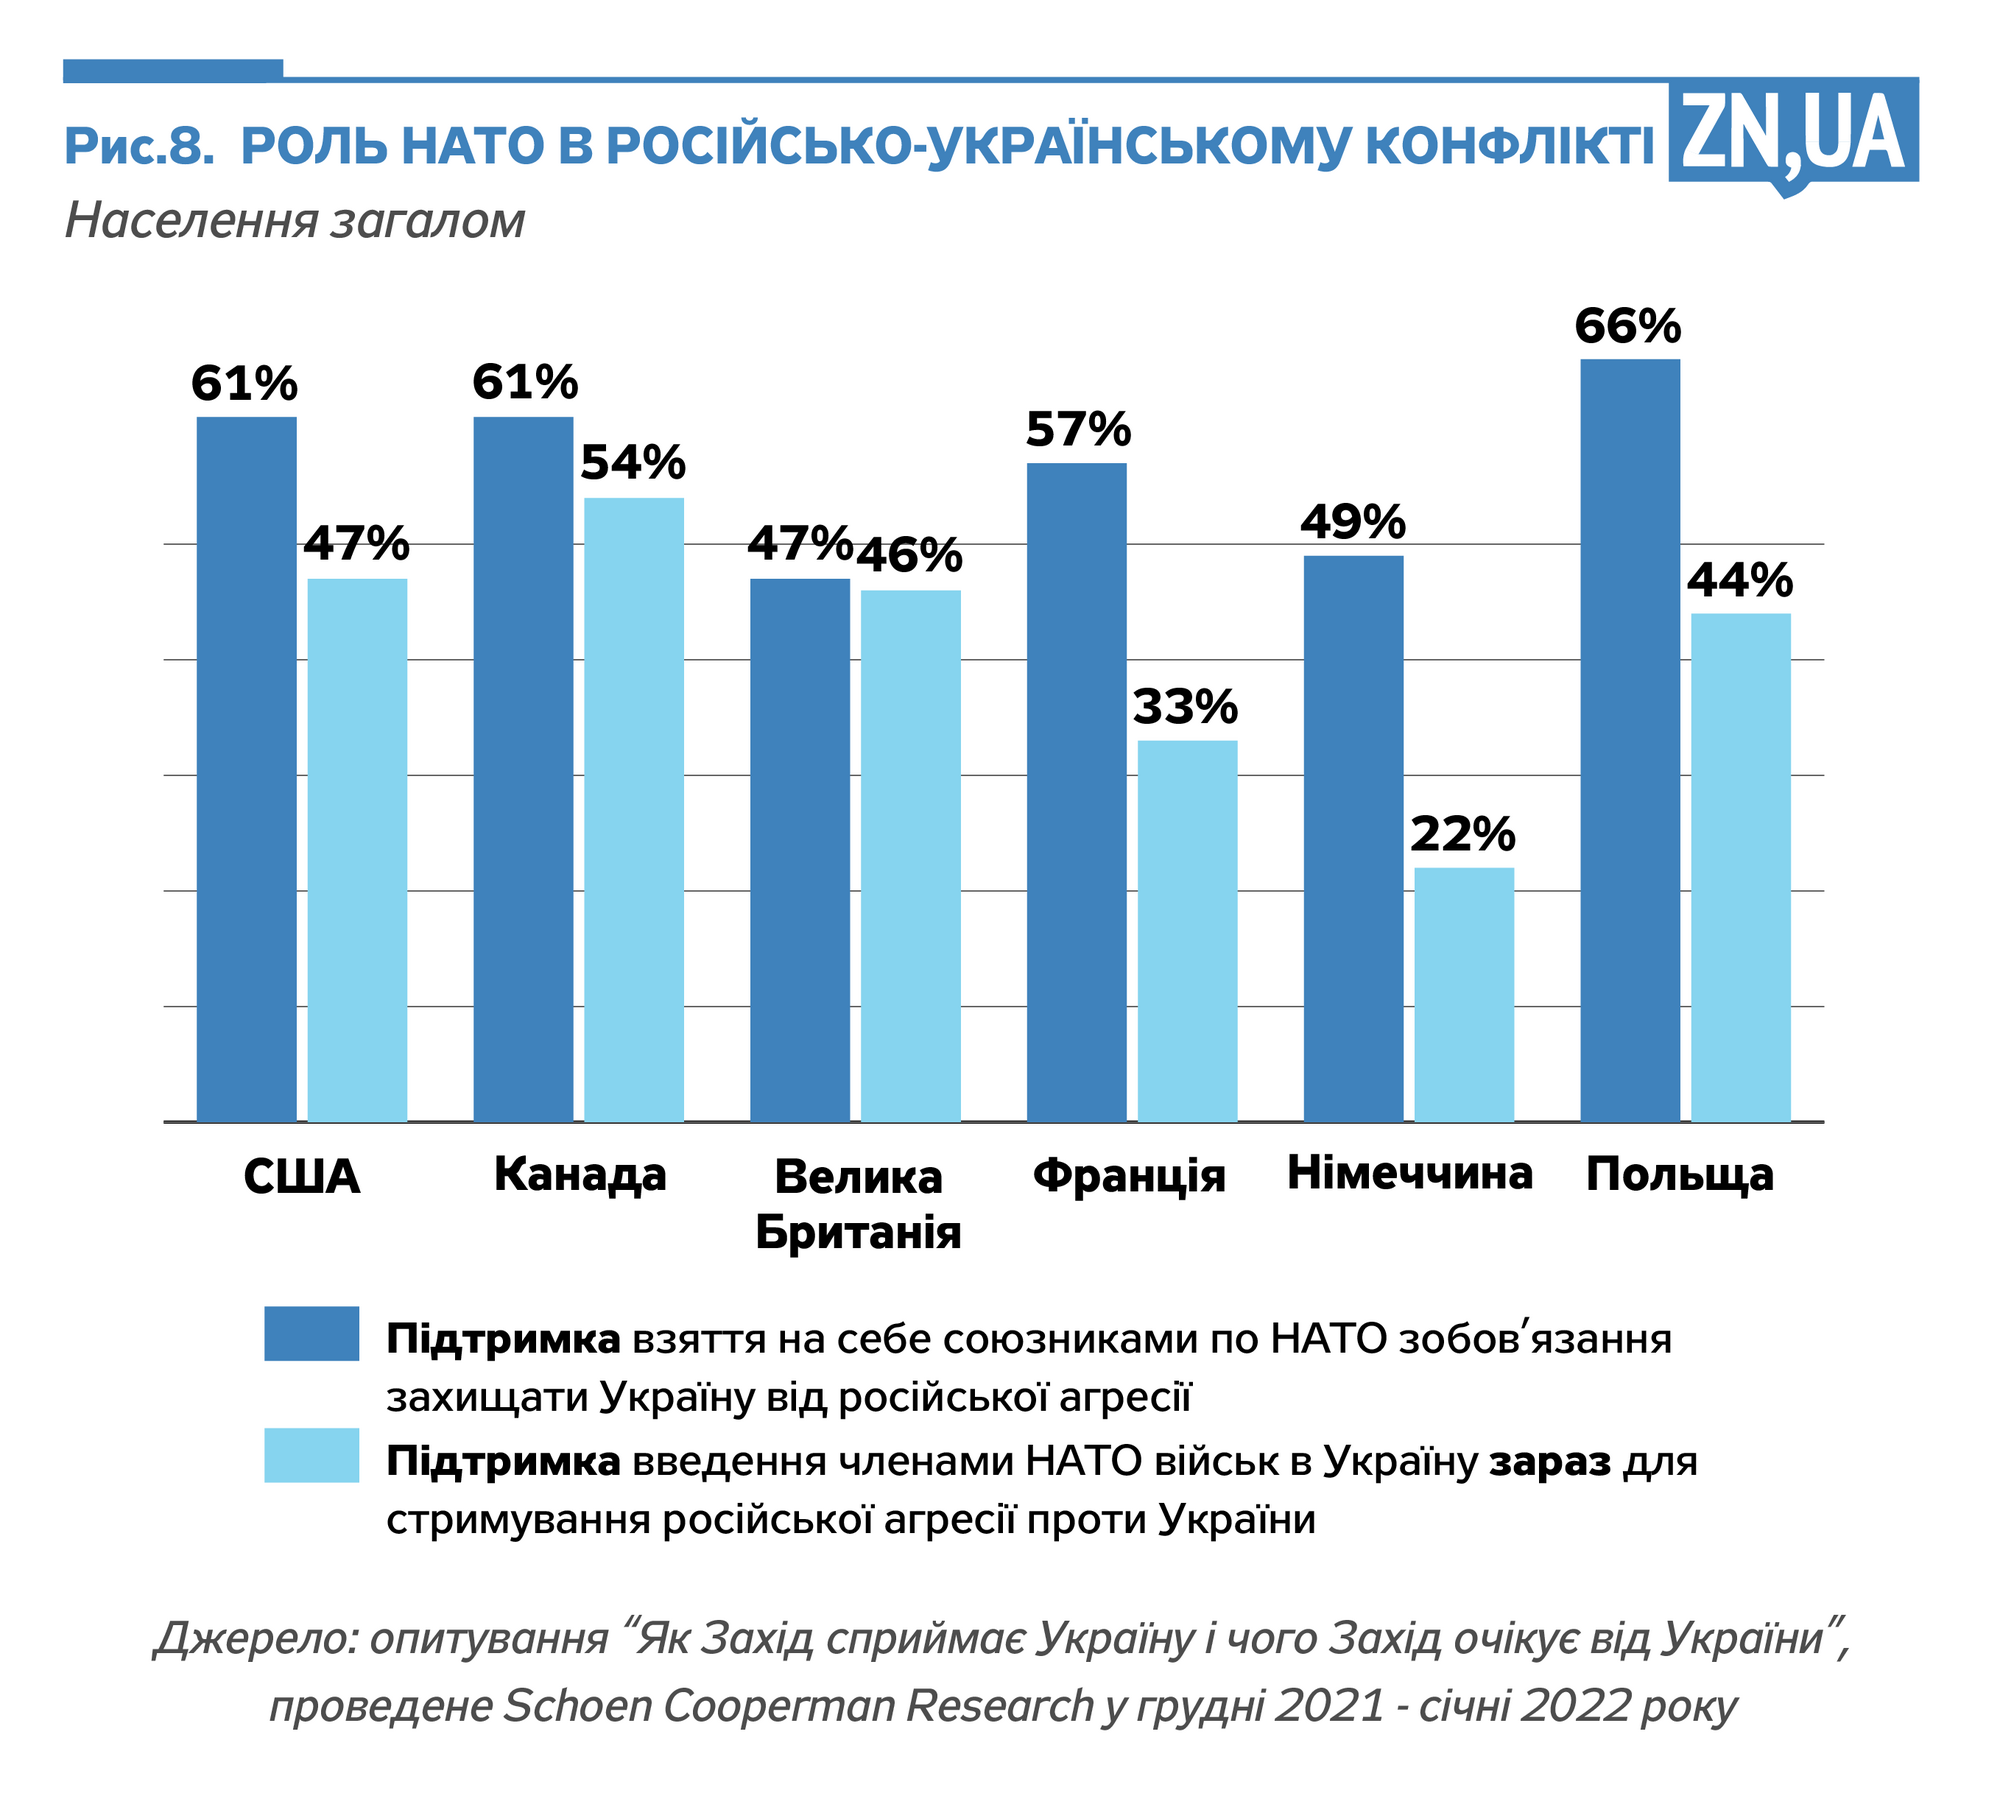 Инфографика ZN.ua